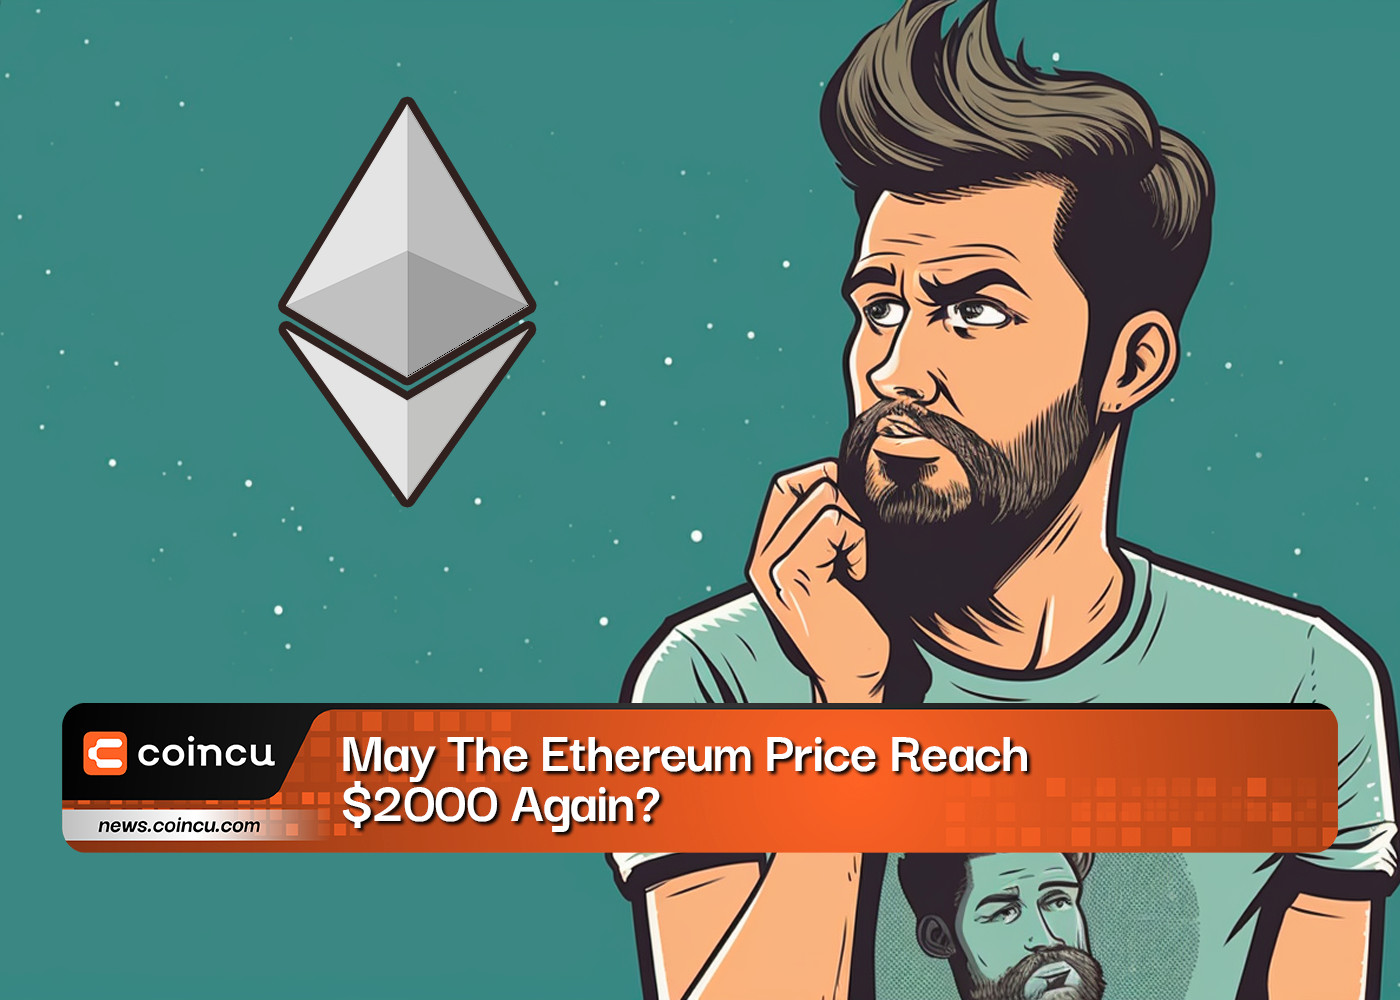 the Ethereum price